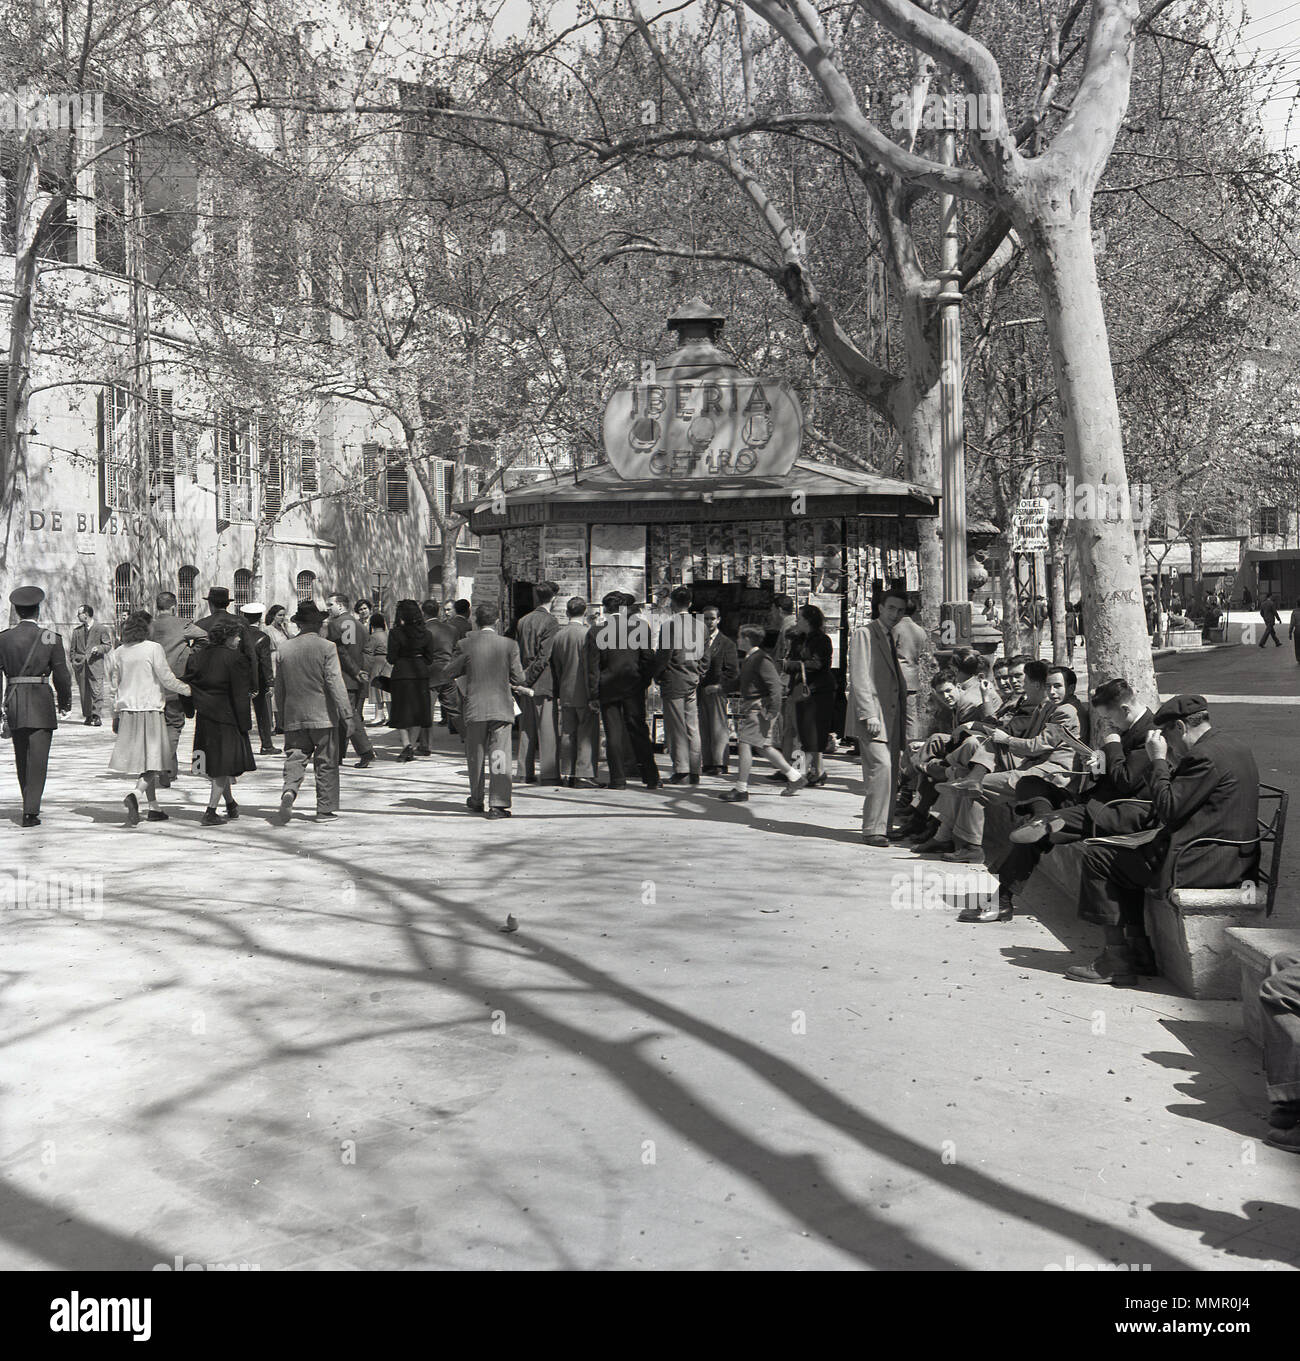 Degli anni Cinquanta, le persone si radunano attorno ad una edicola di giornali o riviste kiosk nella palma, la capitale di Maiorca, Spagna. Foto Stock